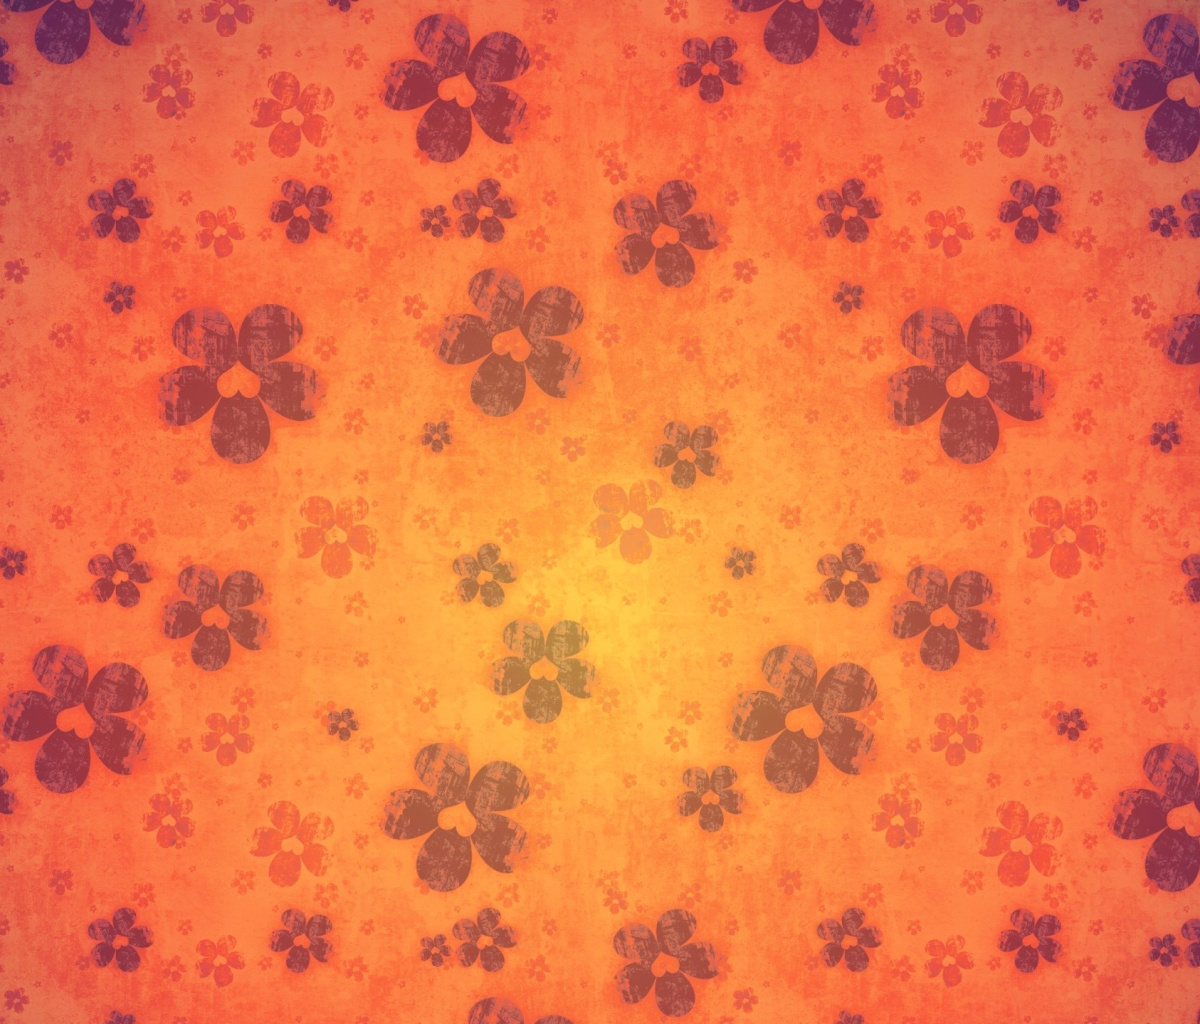 Das Flowers Texture Wallpaper 1200x1024